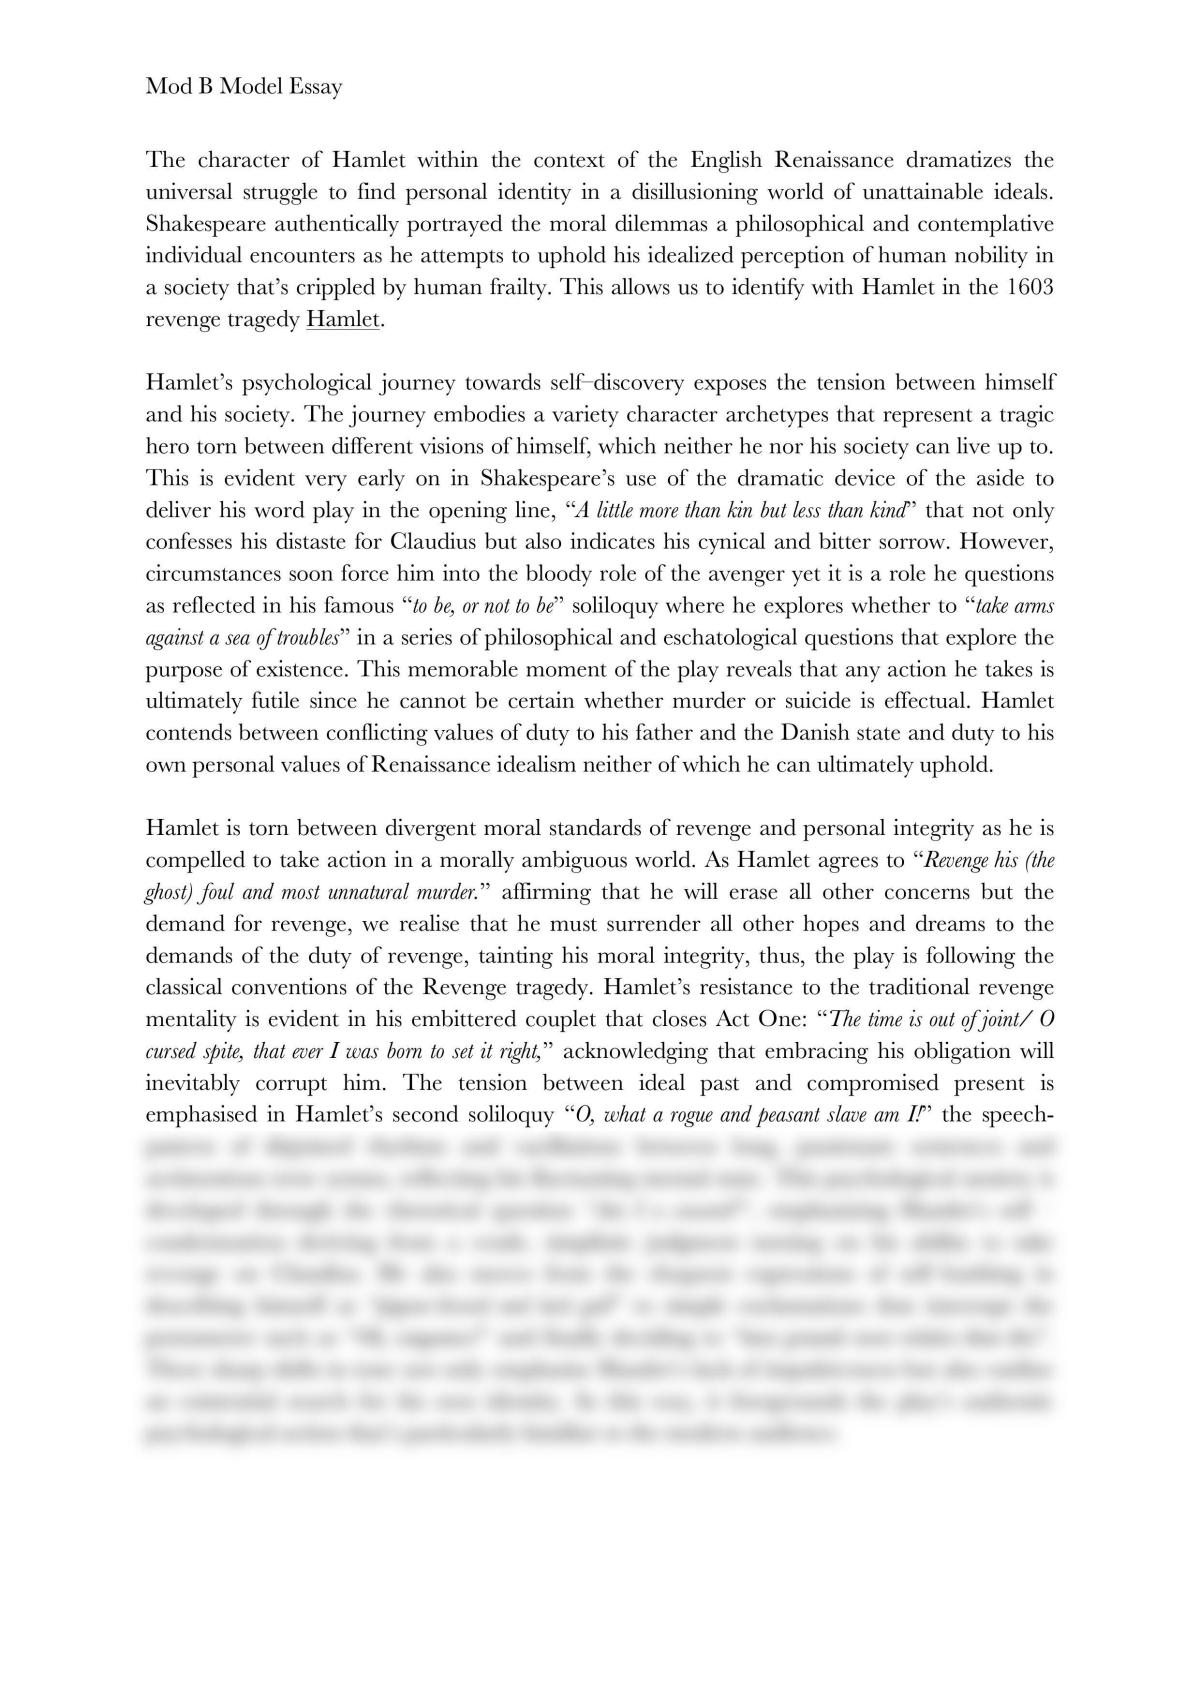 hamlet essay pdf grade 12